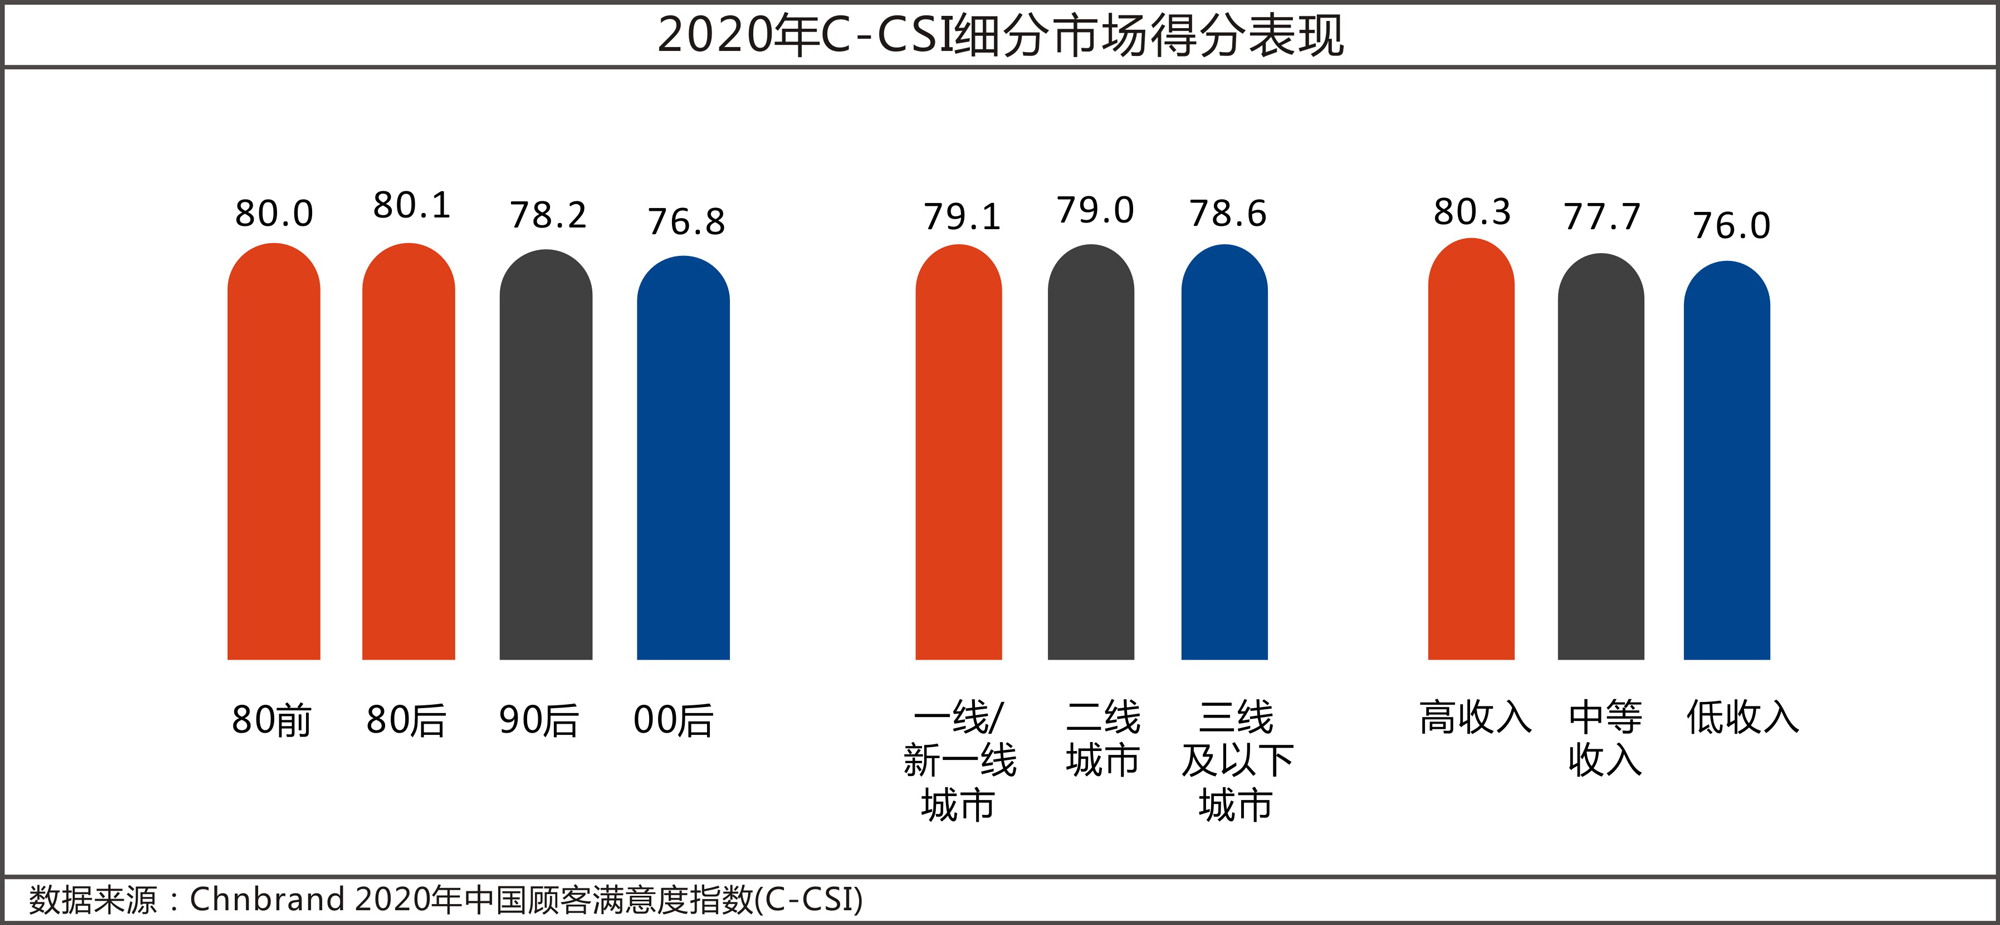 2020年中国顾客满意度指数C-CSI研究成果权威发布